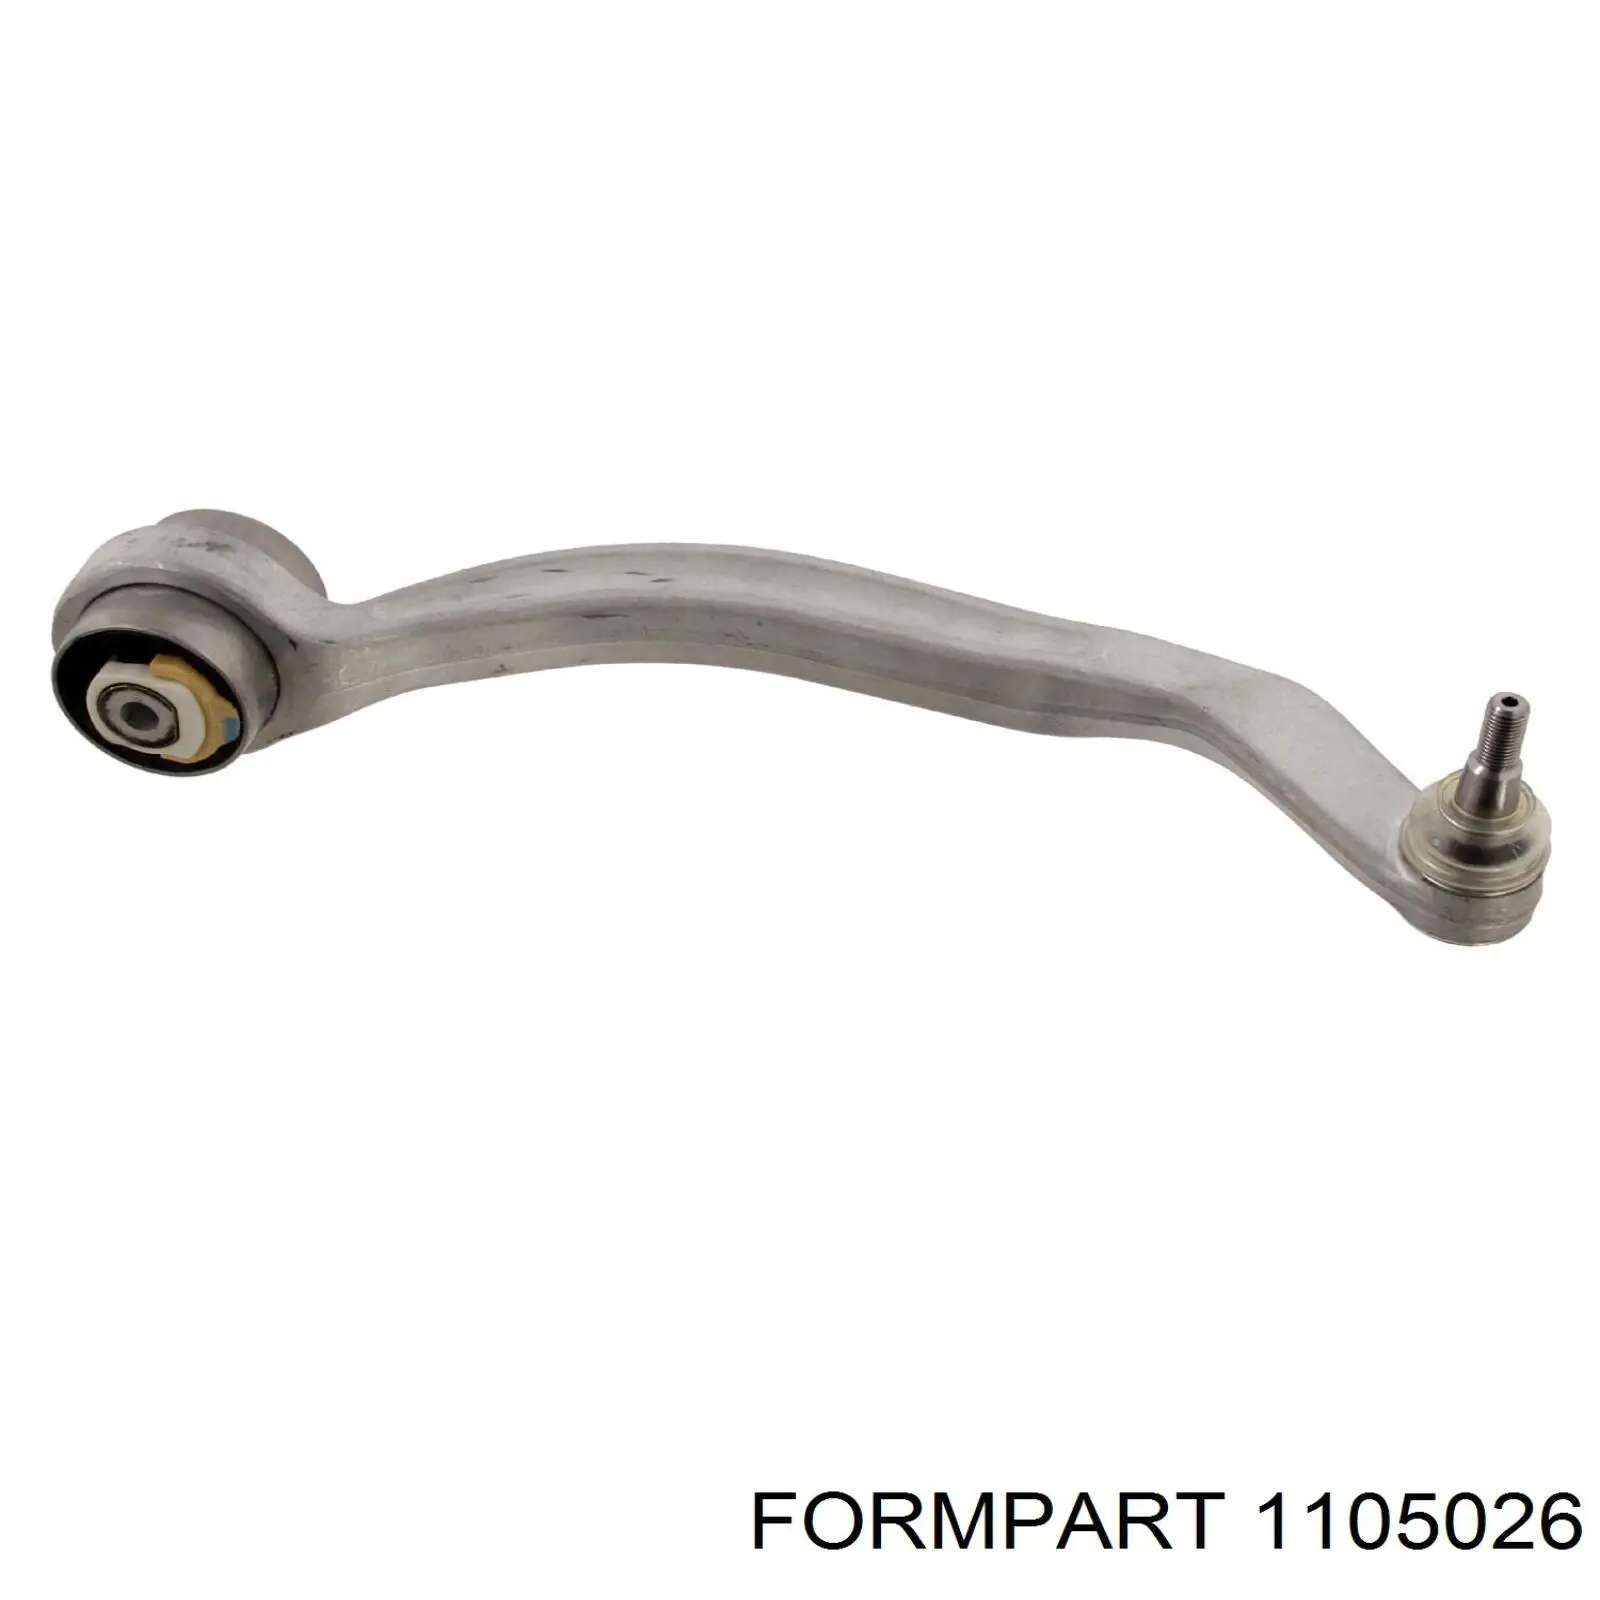 1105026 Formpart/Otoform рычаг передней подвески нижний правый